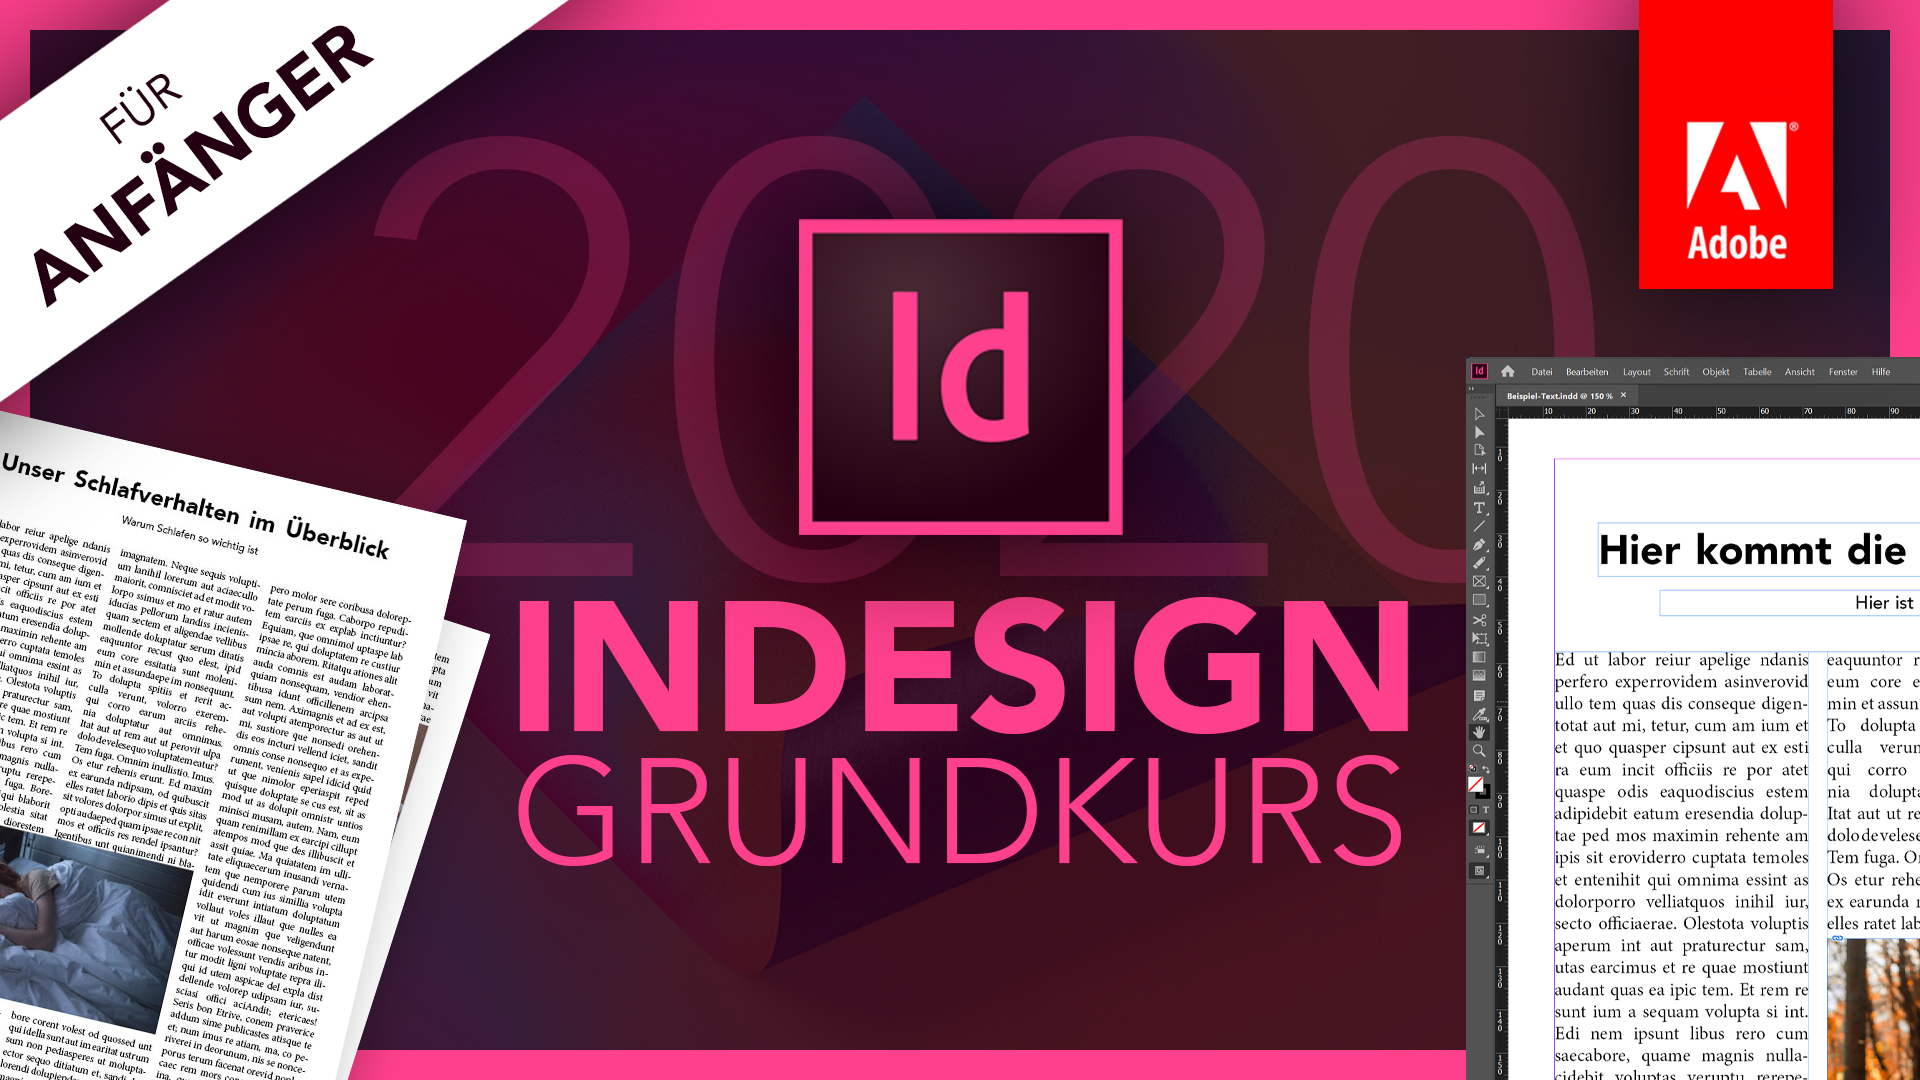 Adobe InDesign 2020 (Grundkurs für Anfänger) Deutsch